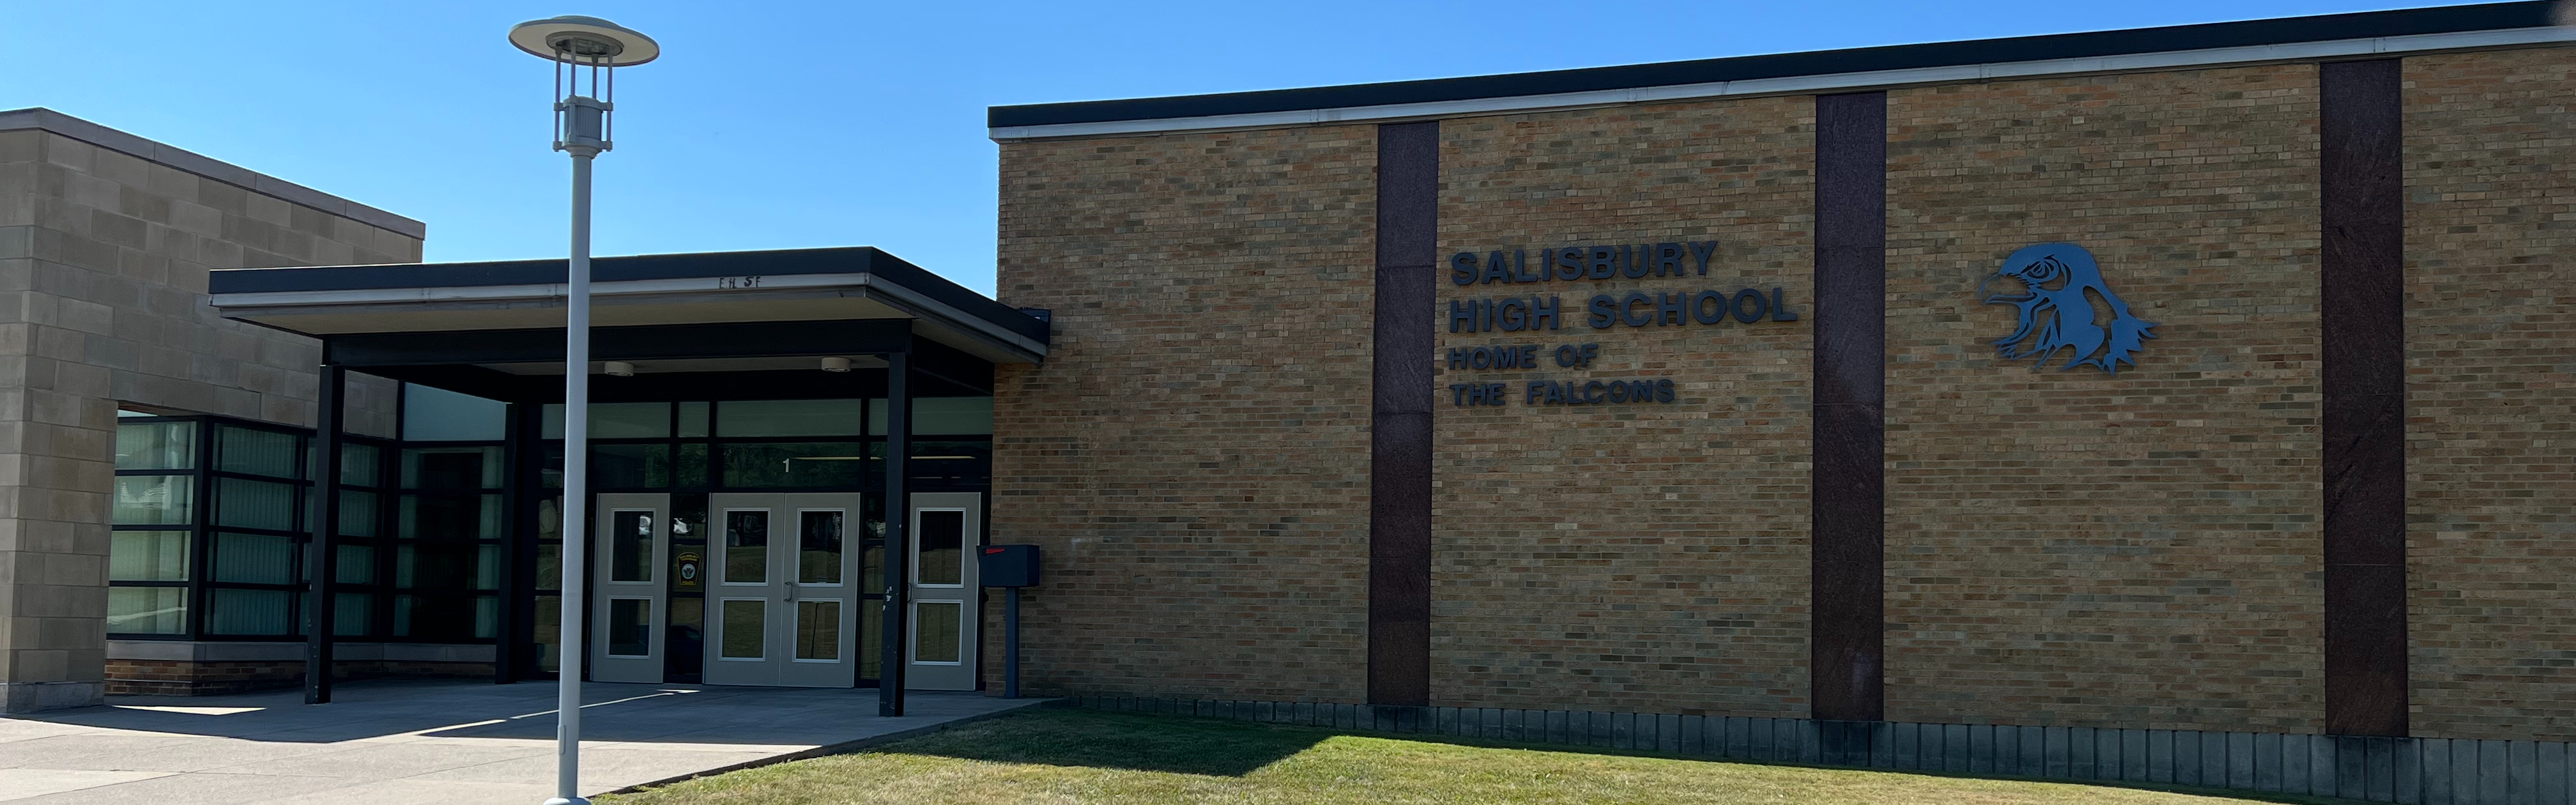 Photo of Salisbury High School